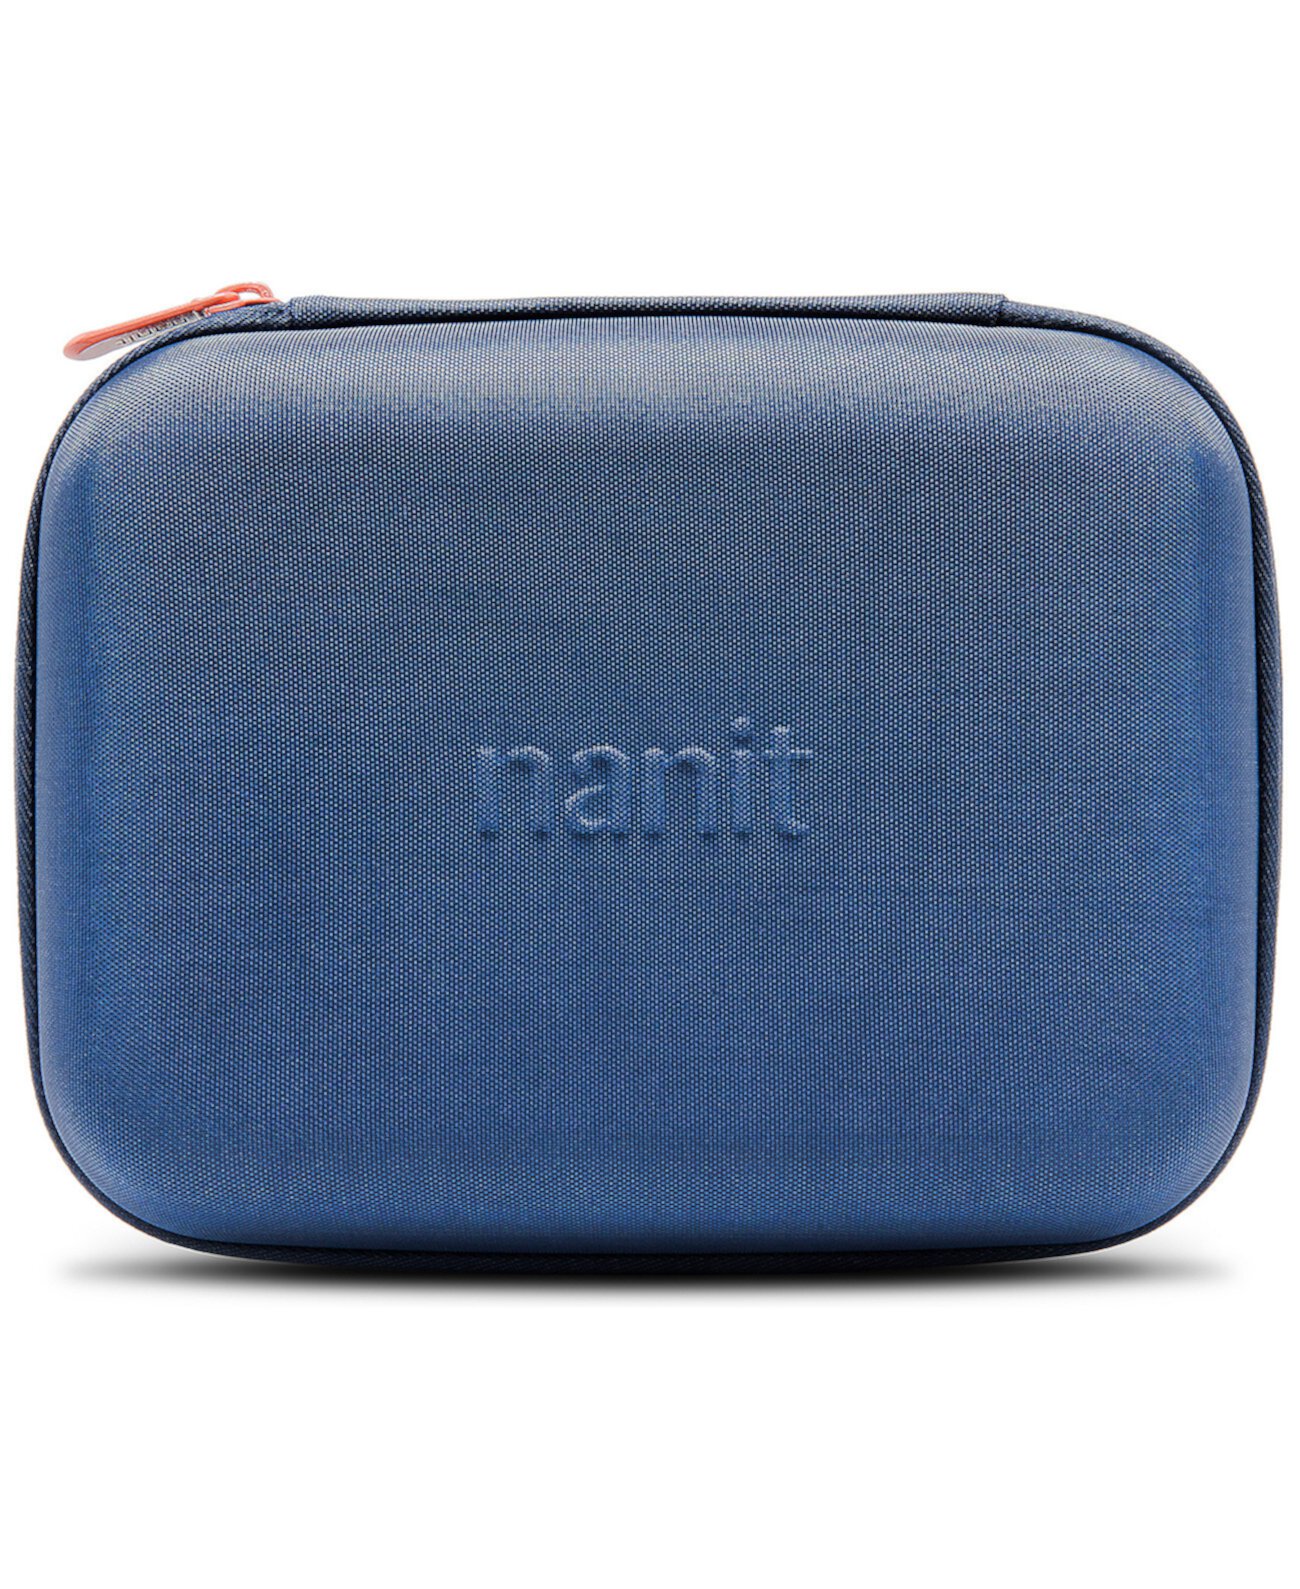 Дорожный чемодан Nanit